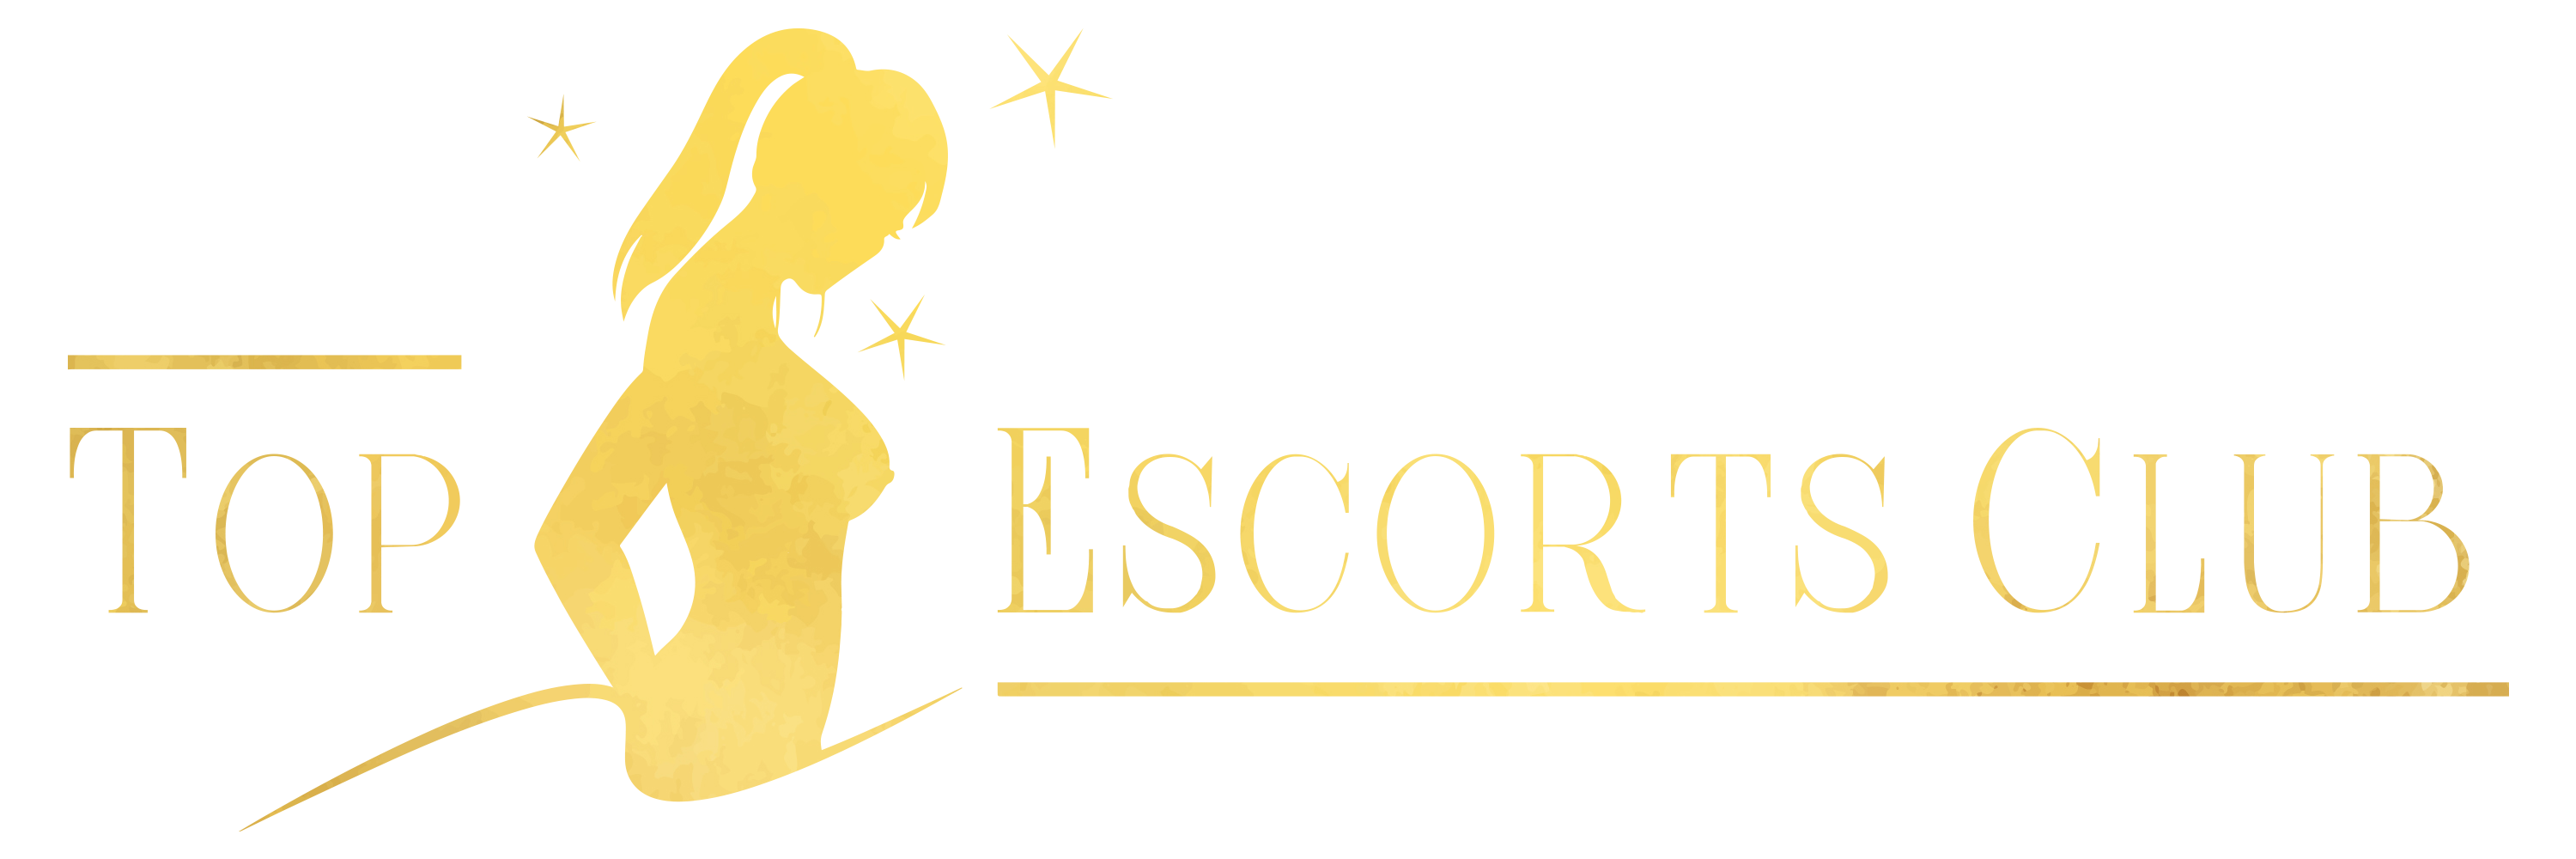 Delhi Escorts Service - Top Escorts Club | Best Escort Girls - TopEscortsClub - Top Escorts - Playmates - PornStars